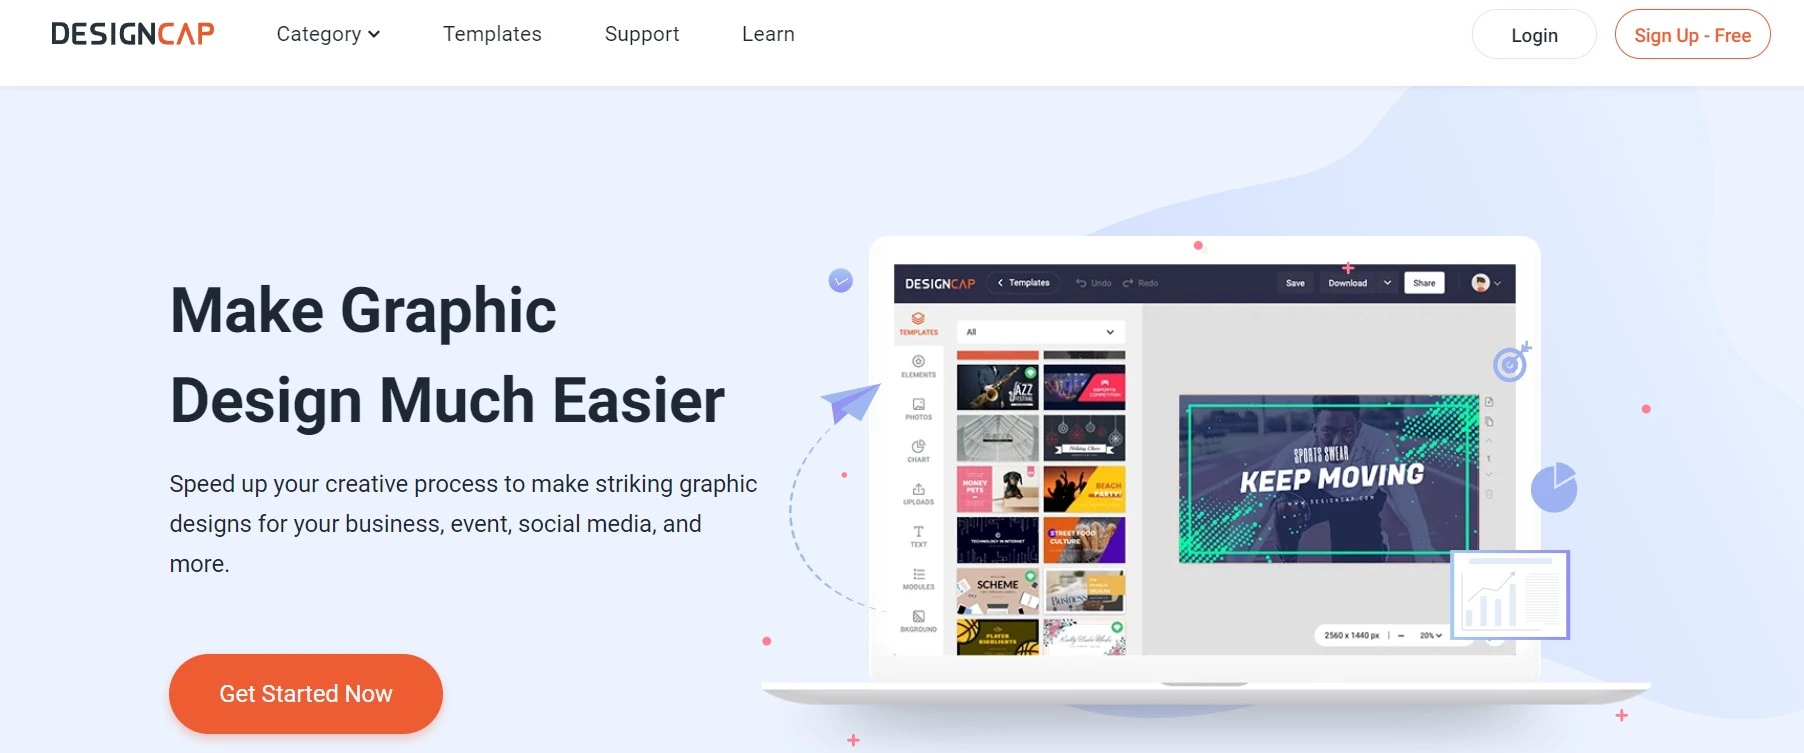 Designcap makes graphic design easier